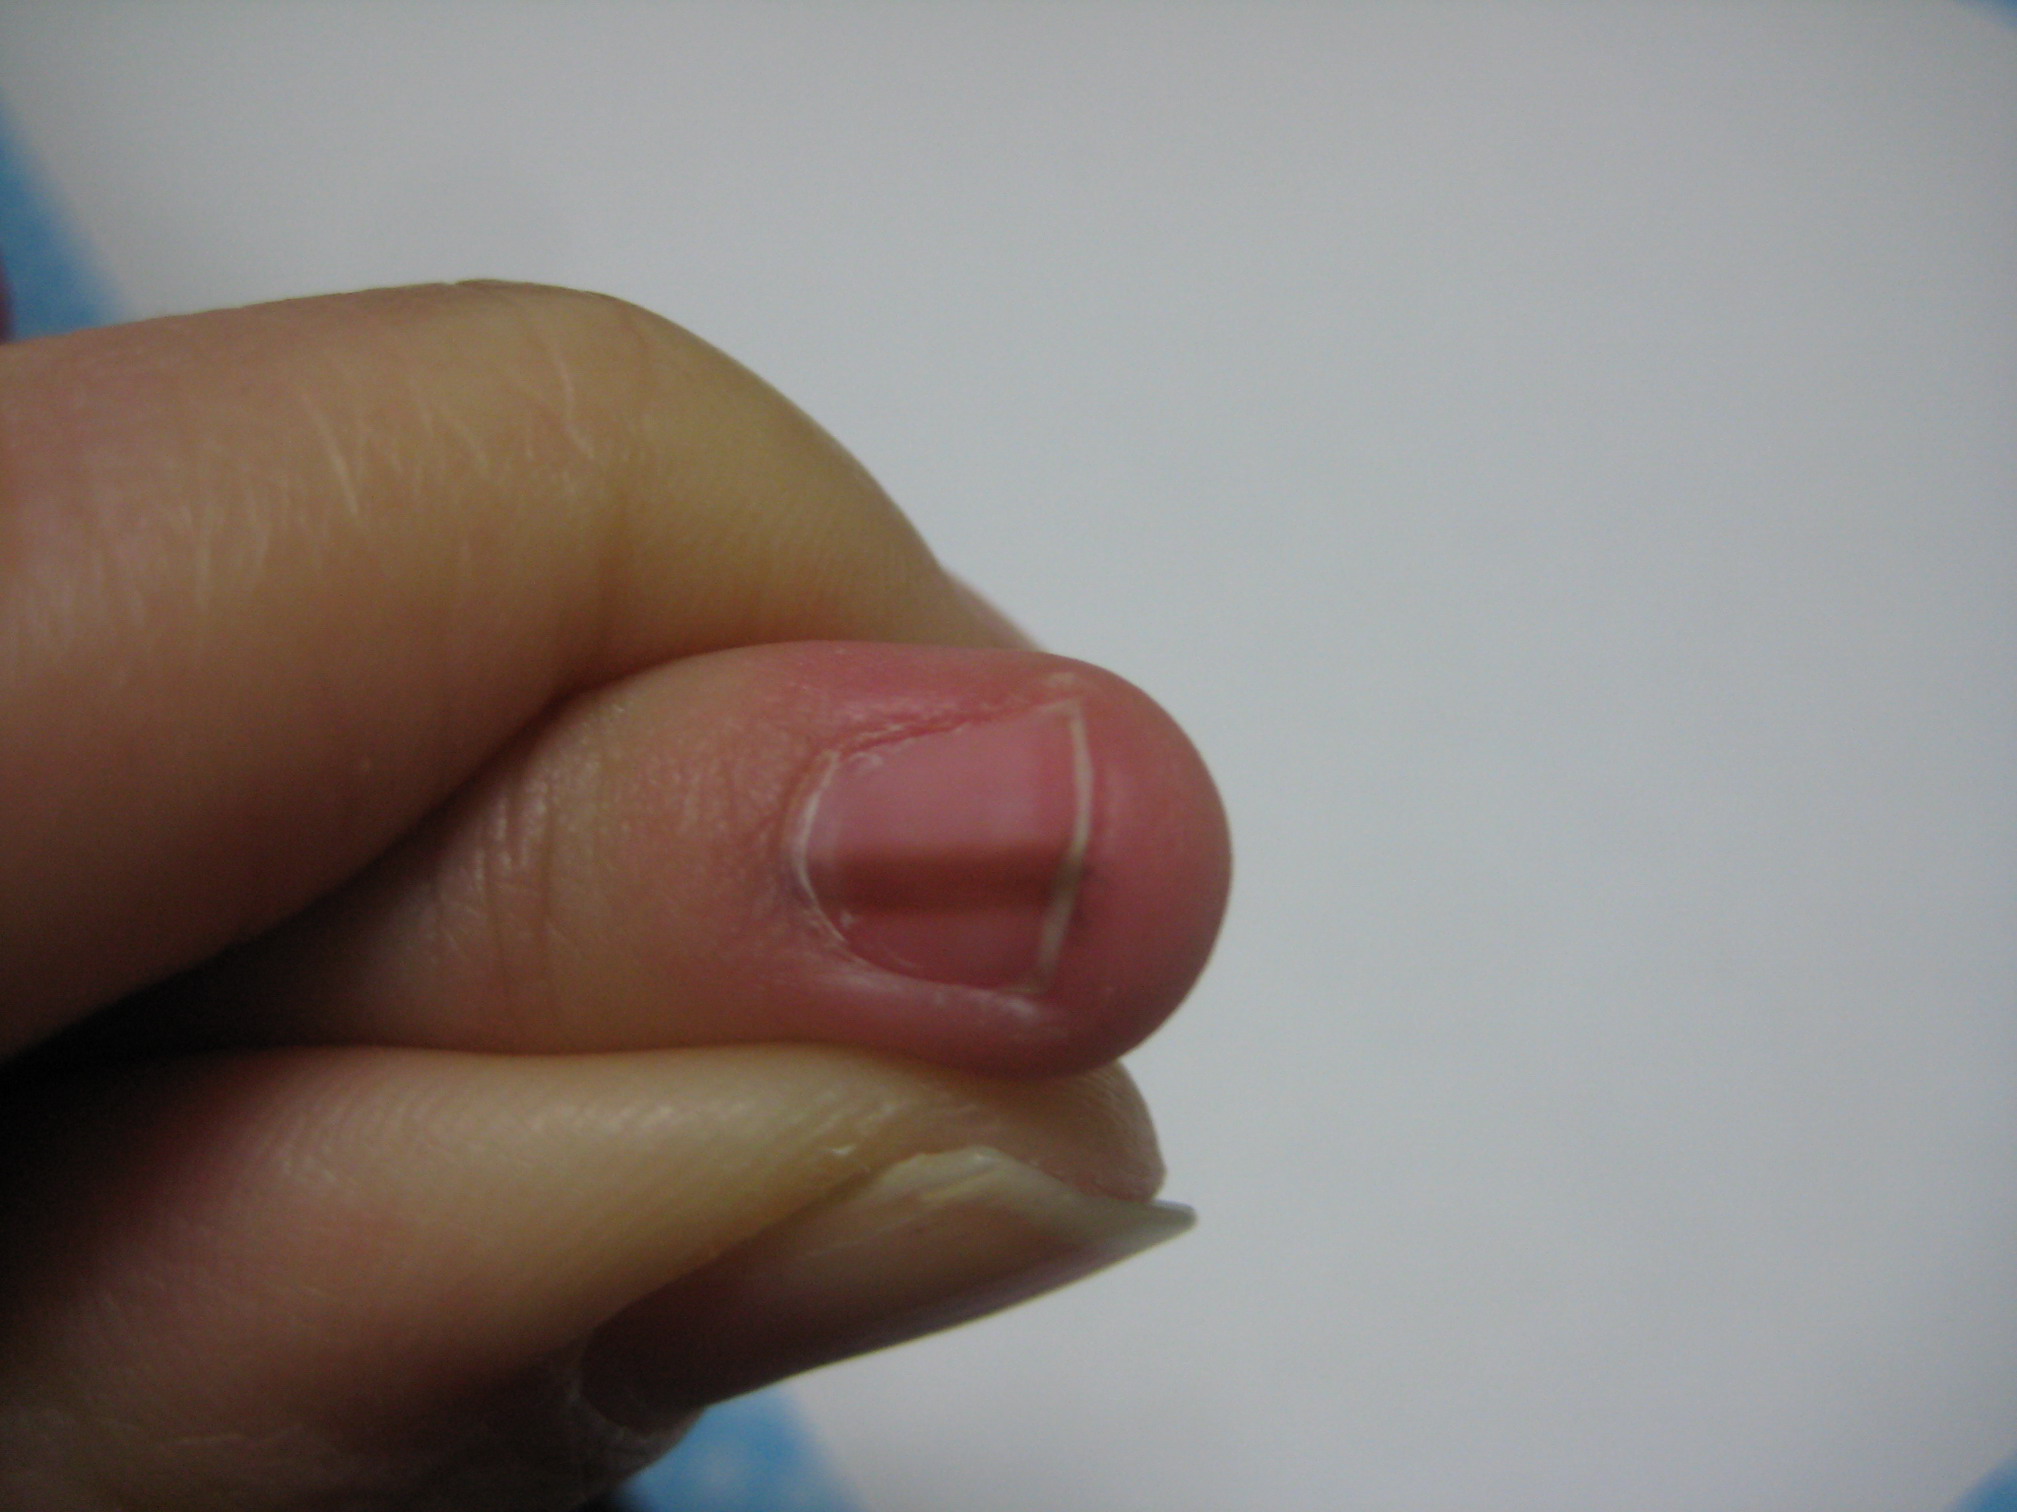 而指甲上的这条黑线叫做"甲母痣",当痣的部位受到刺激或者损伤时,黑